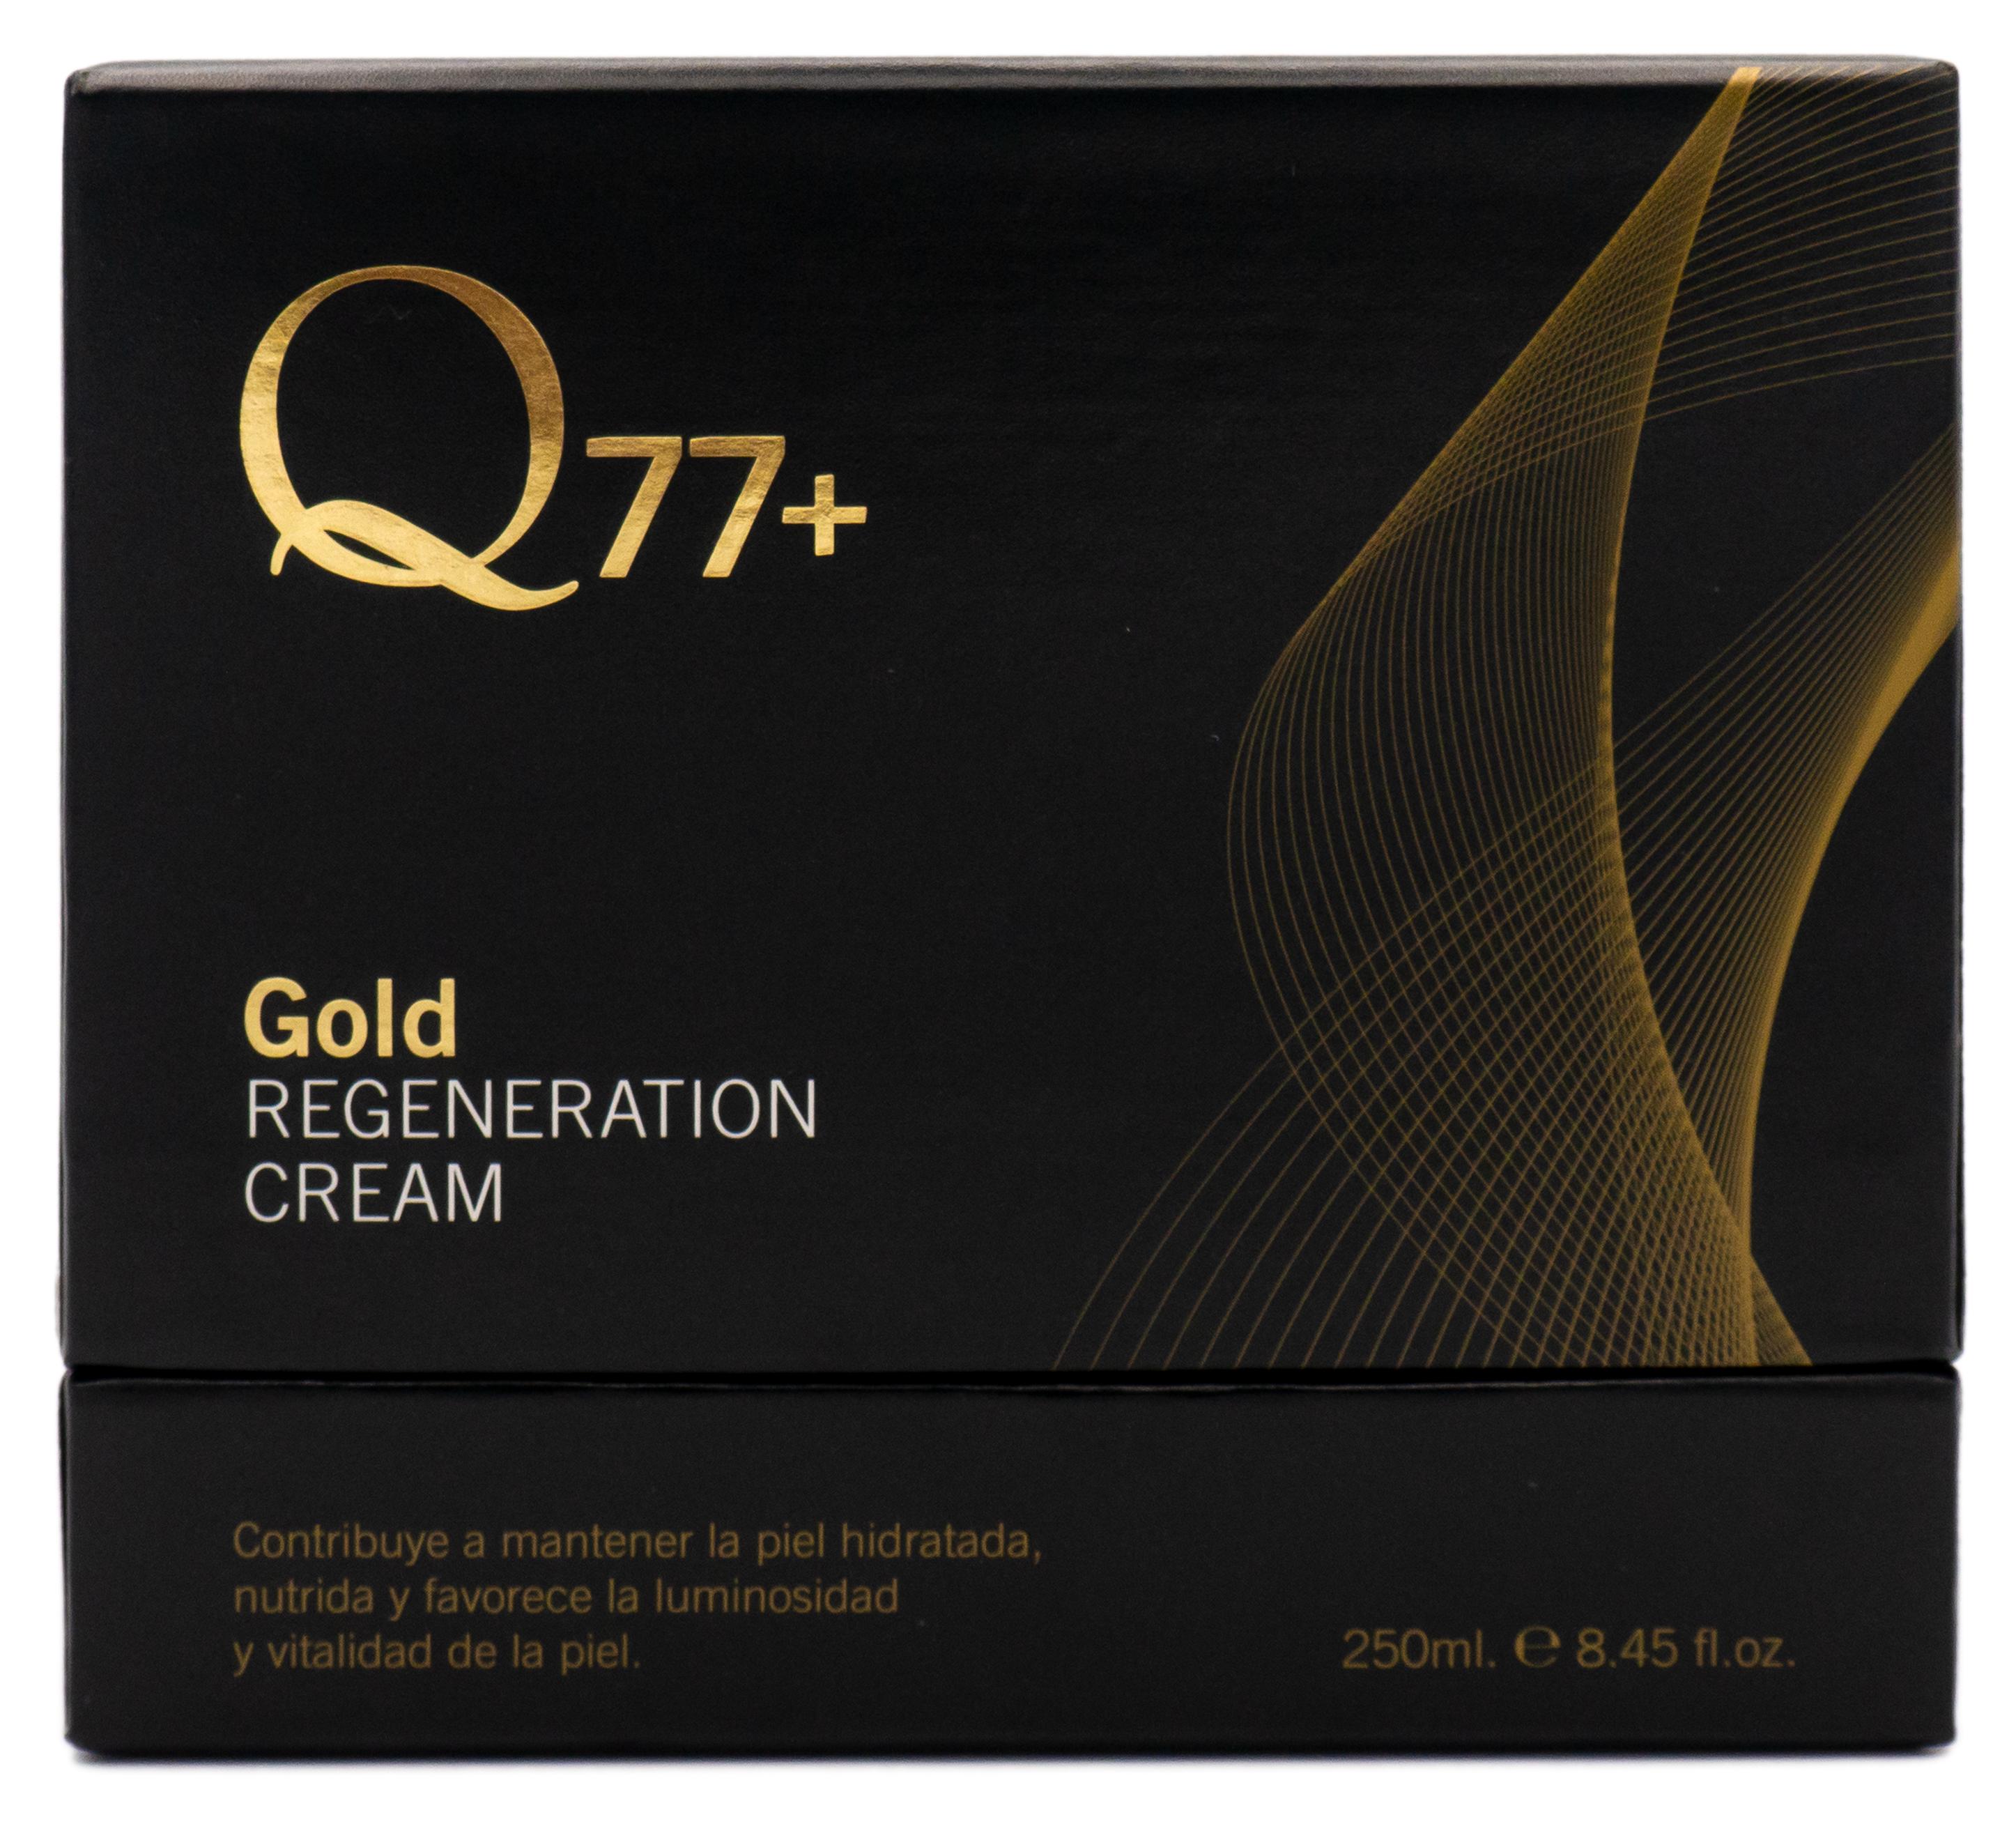 Изображение товара: Q77 + GOLD регенерирующий крем | Увлажняющий крем для лица | Антивозрастной эффект | Крем против морщин | С гиалуроновой кислотой и 24-каратным золотом